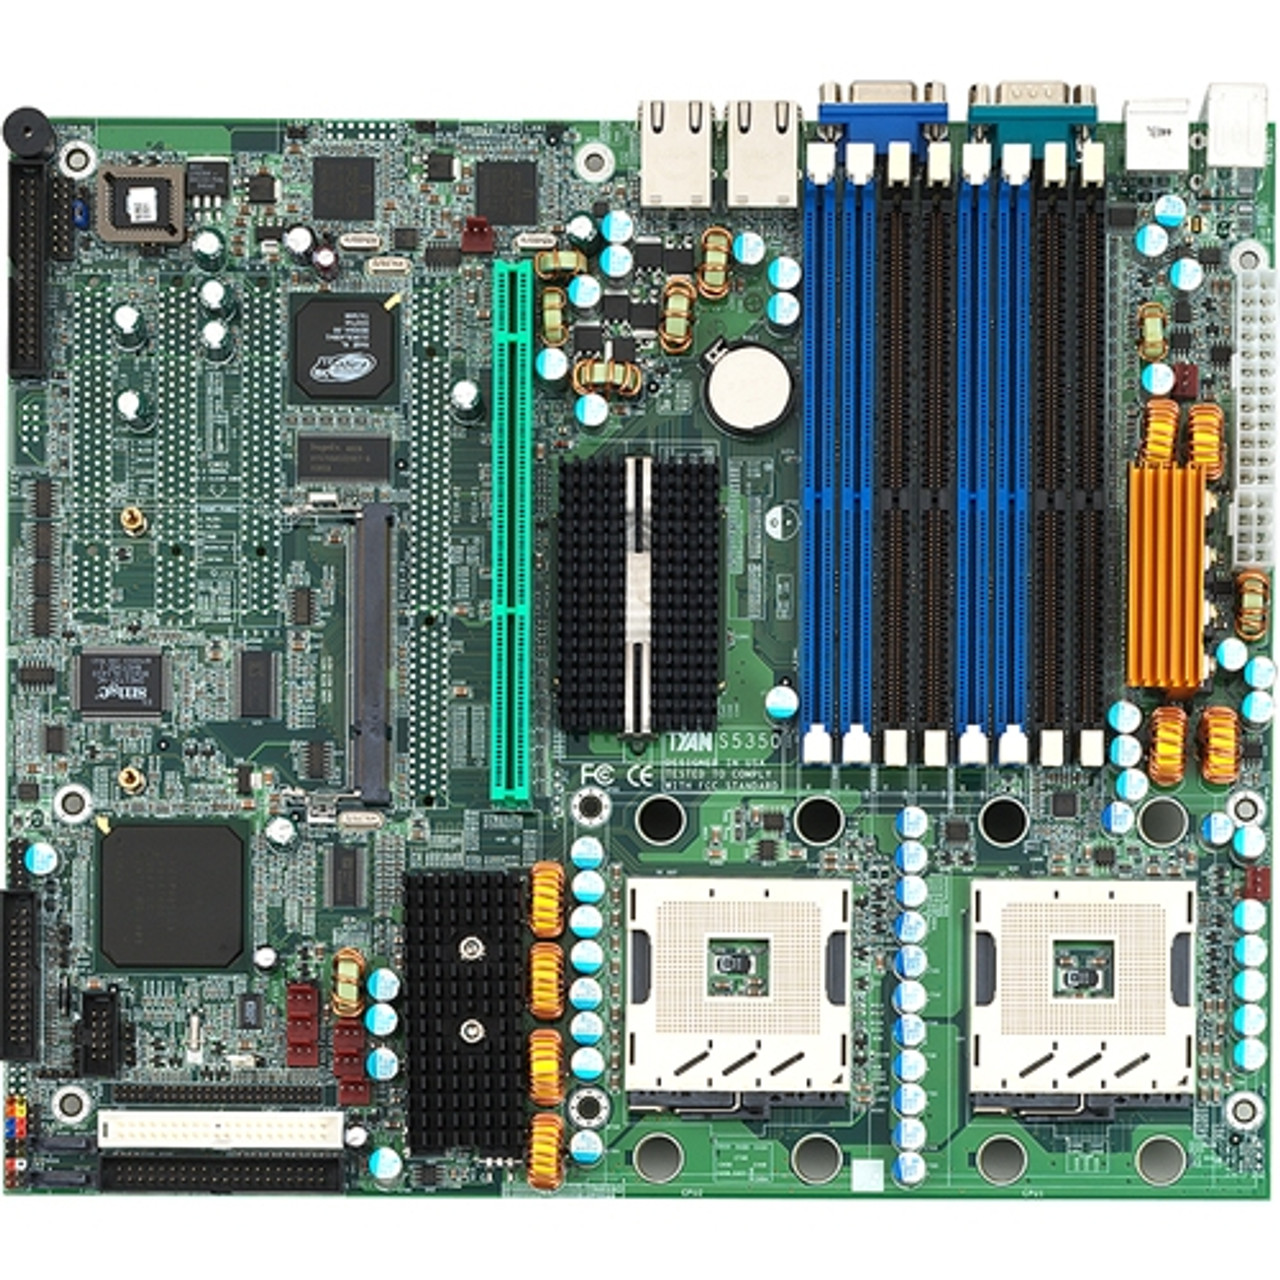 S5350G2NR-1U Tyan Tiger (S5350-1U) Server Motherboard Intel E7320 Chipset Socket PGA-604 (Refurbished)